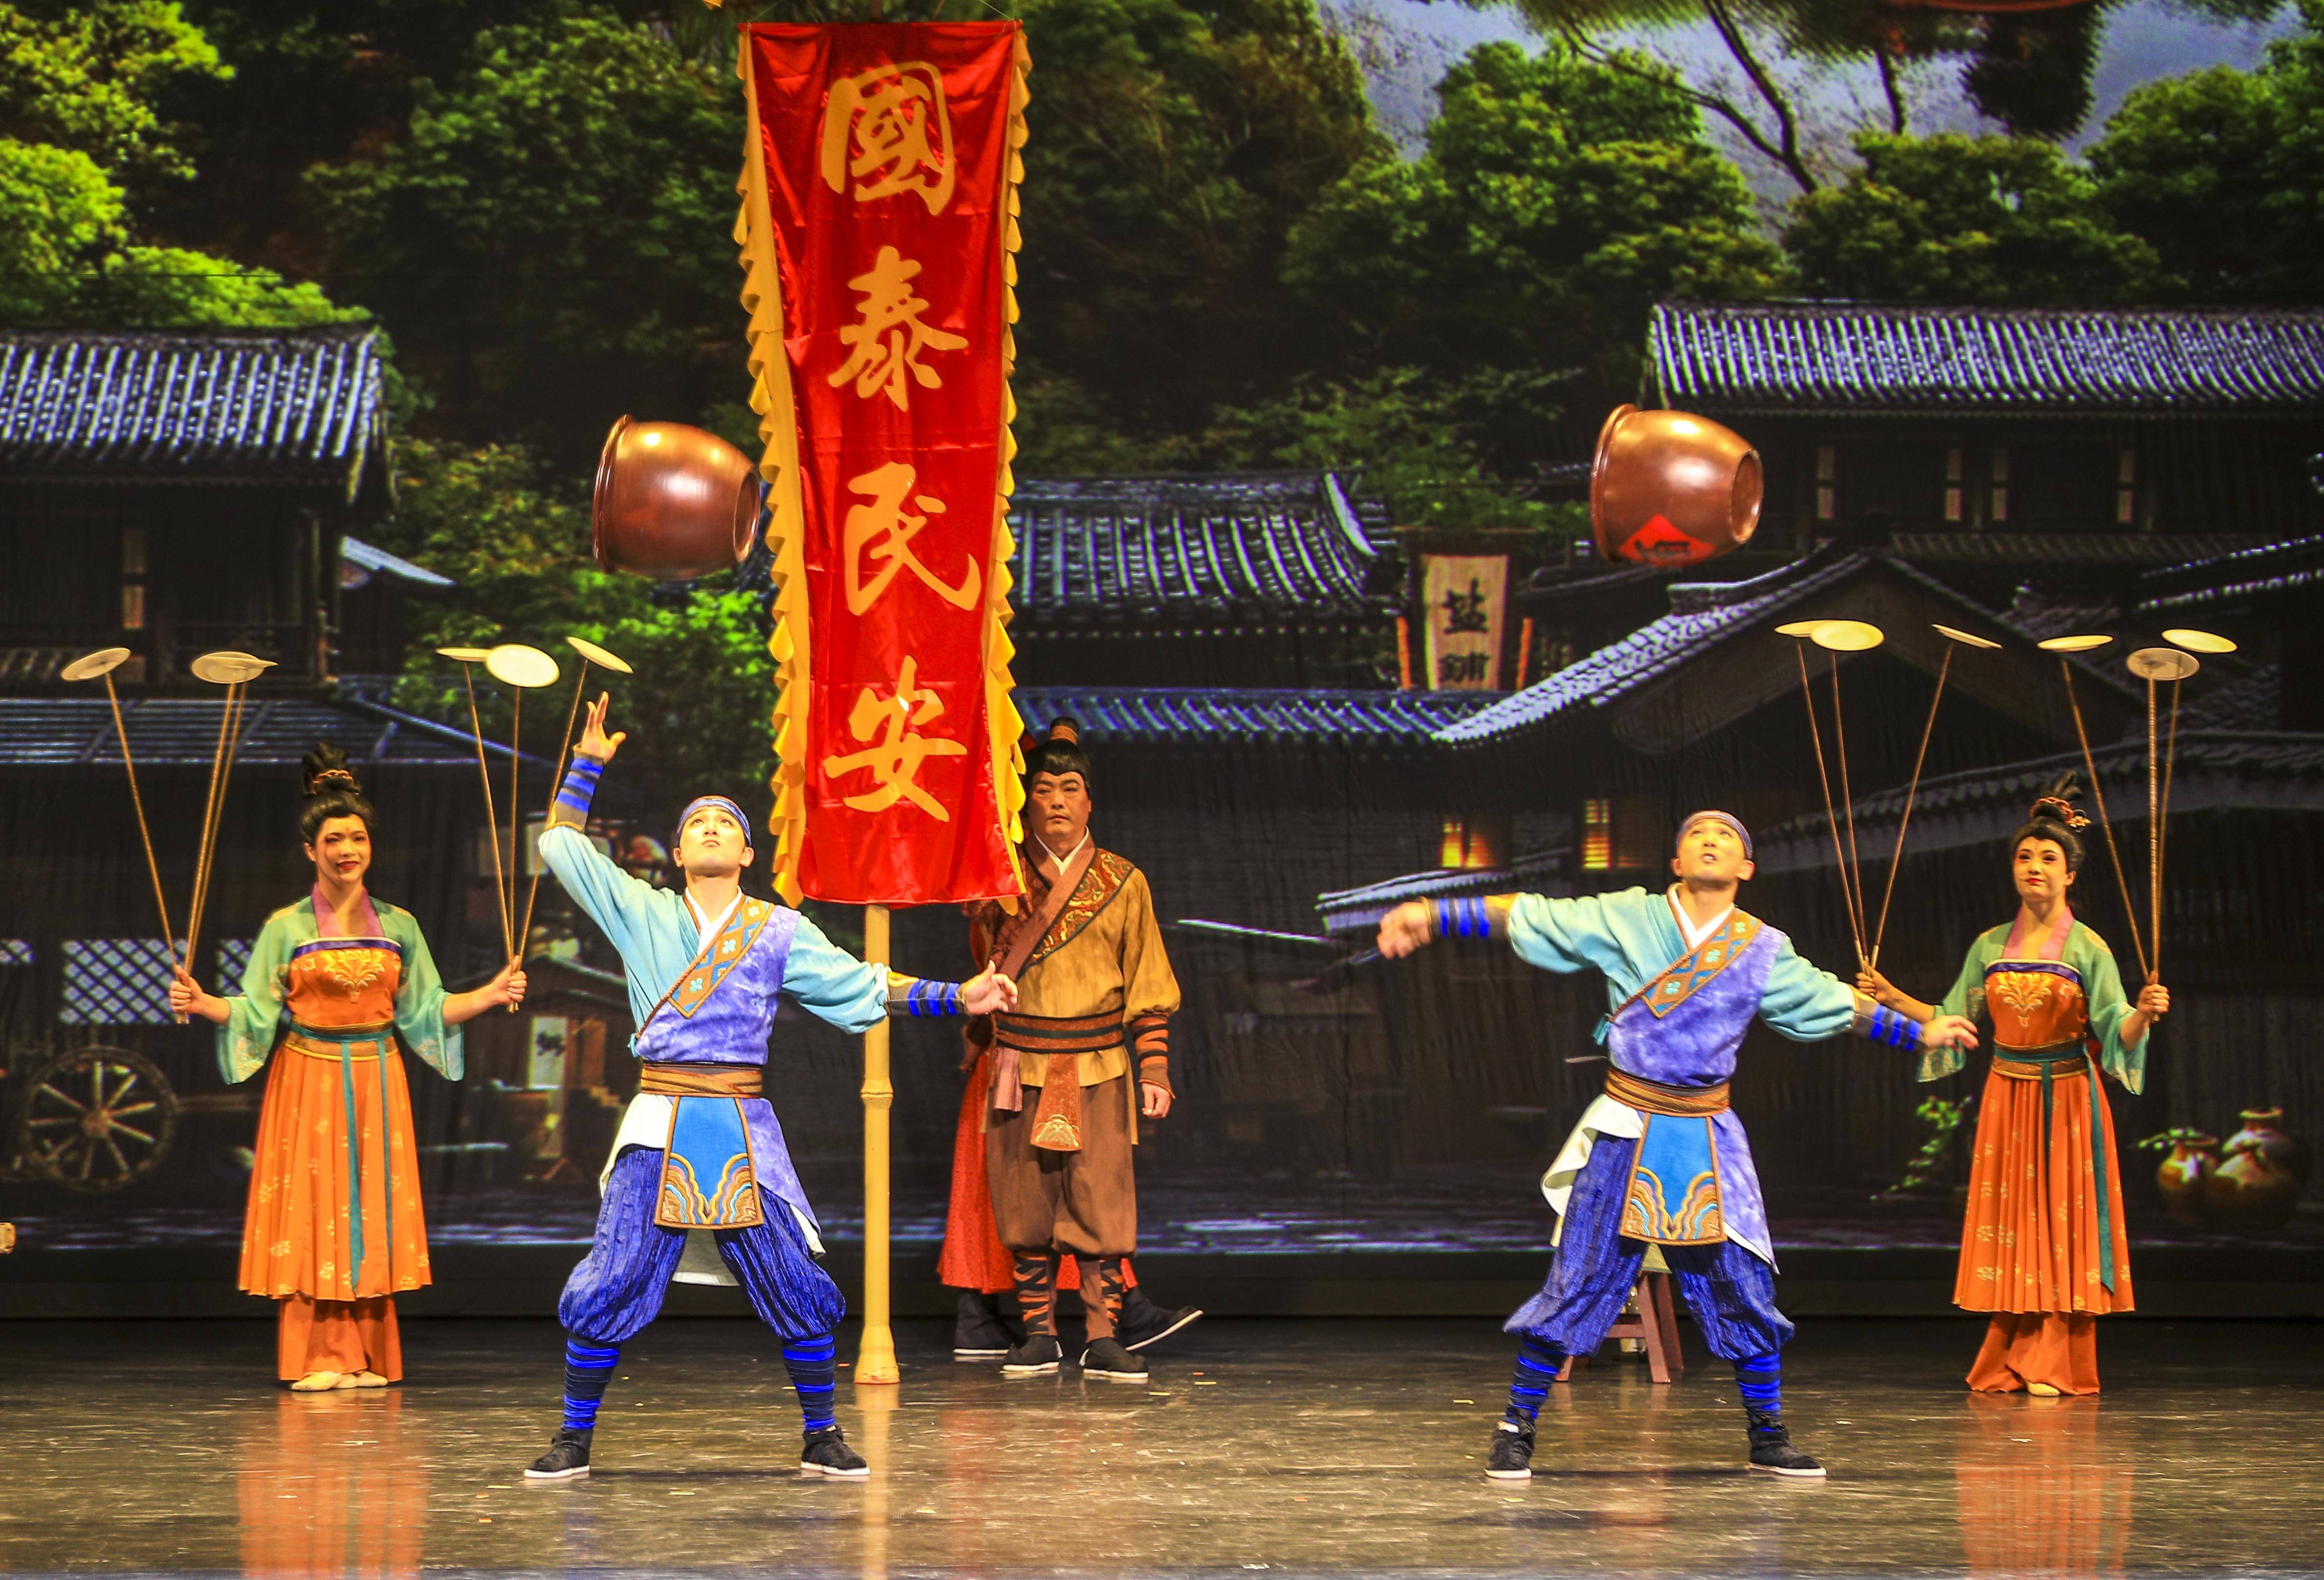 该剧以杂技技巧与舞蹈等表演形式相结合,展现唐代中国商